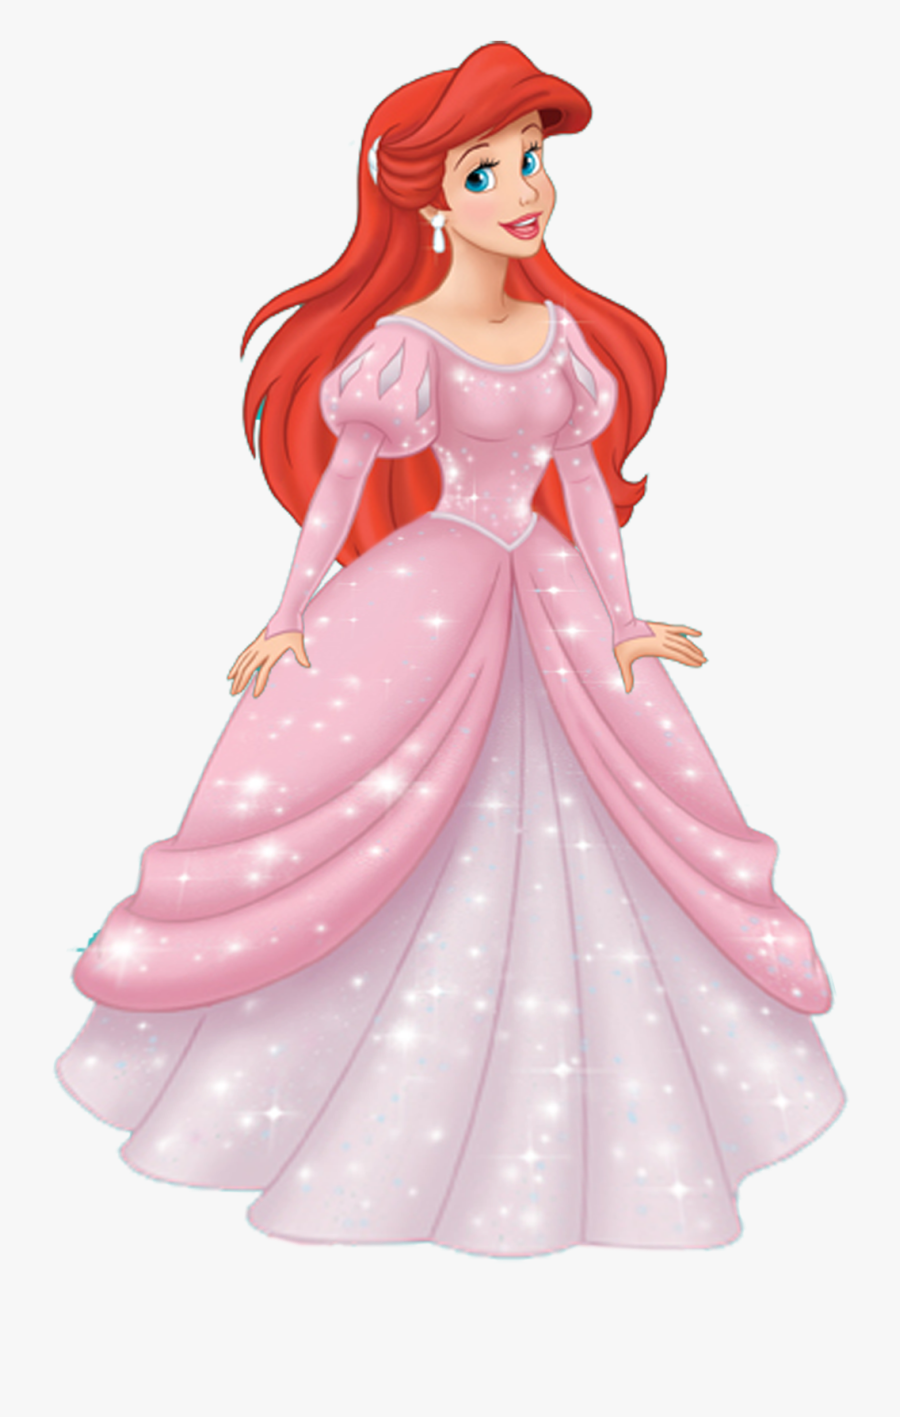 Disney Princess Ariel Clip Art 